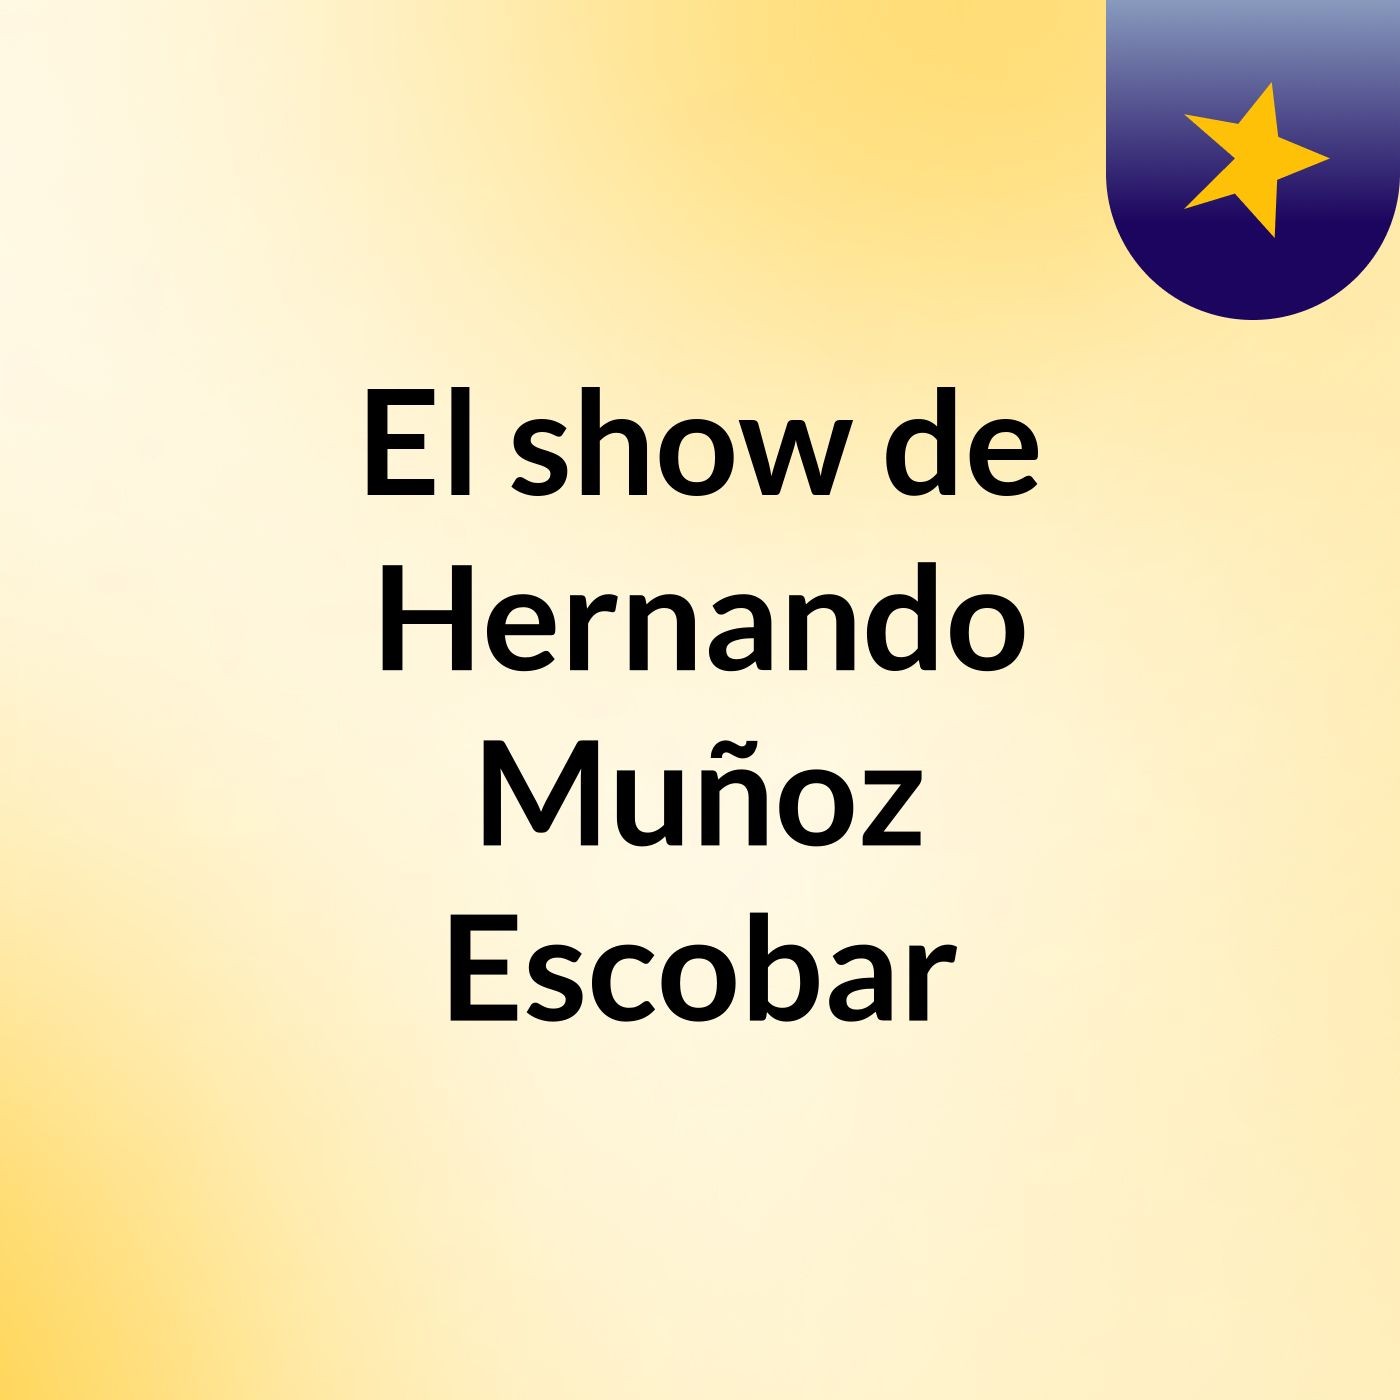 El show de Hernando Muñoz Escobar